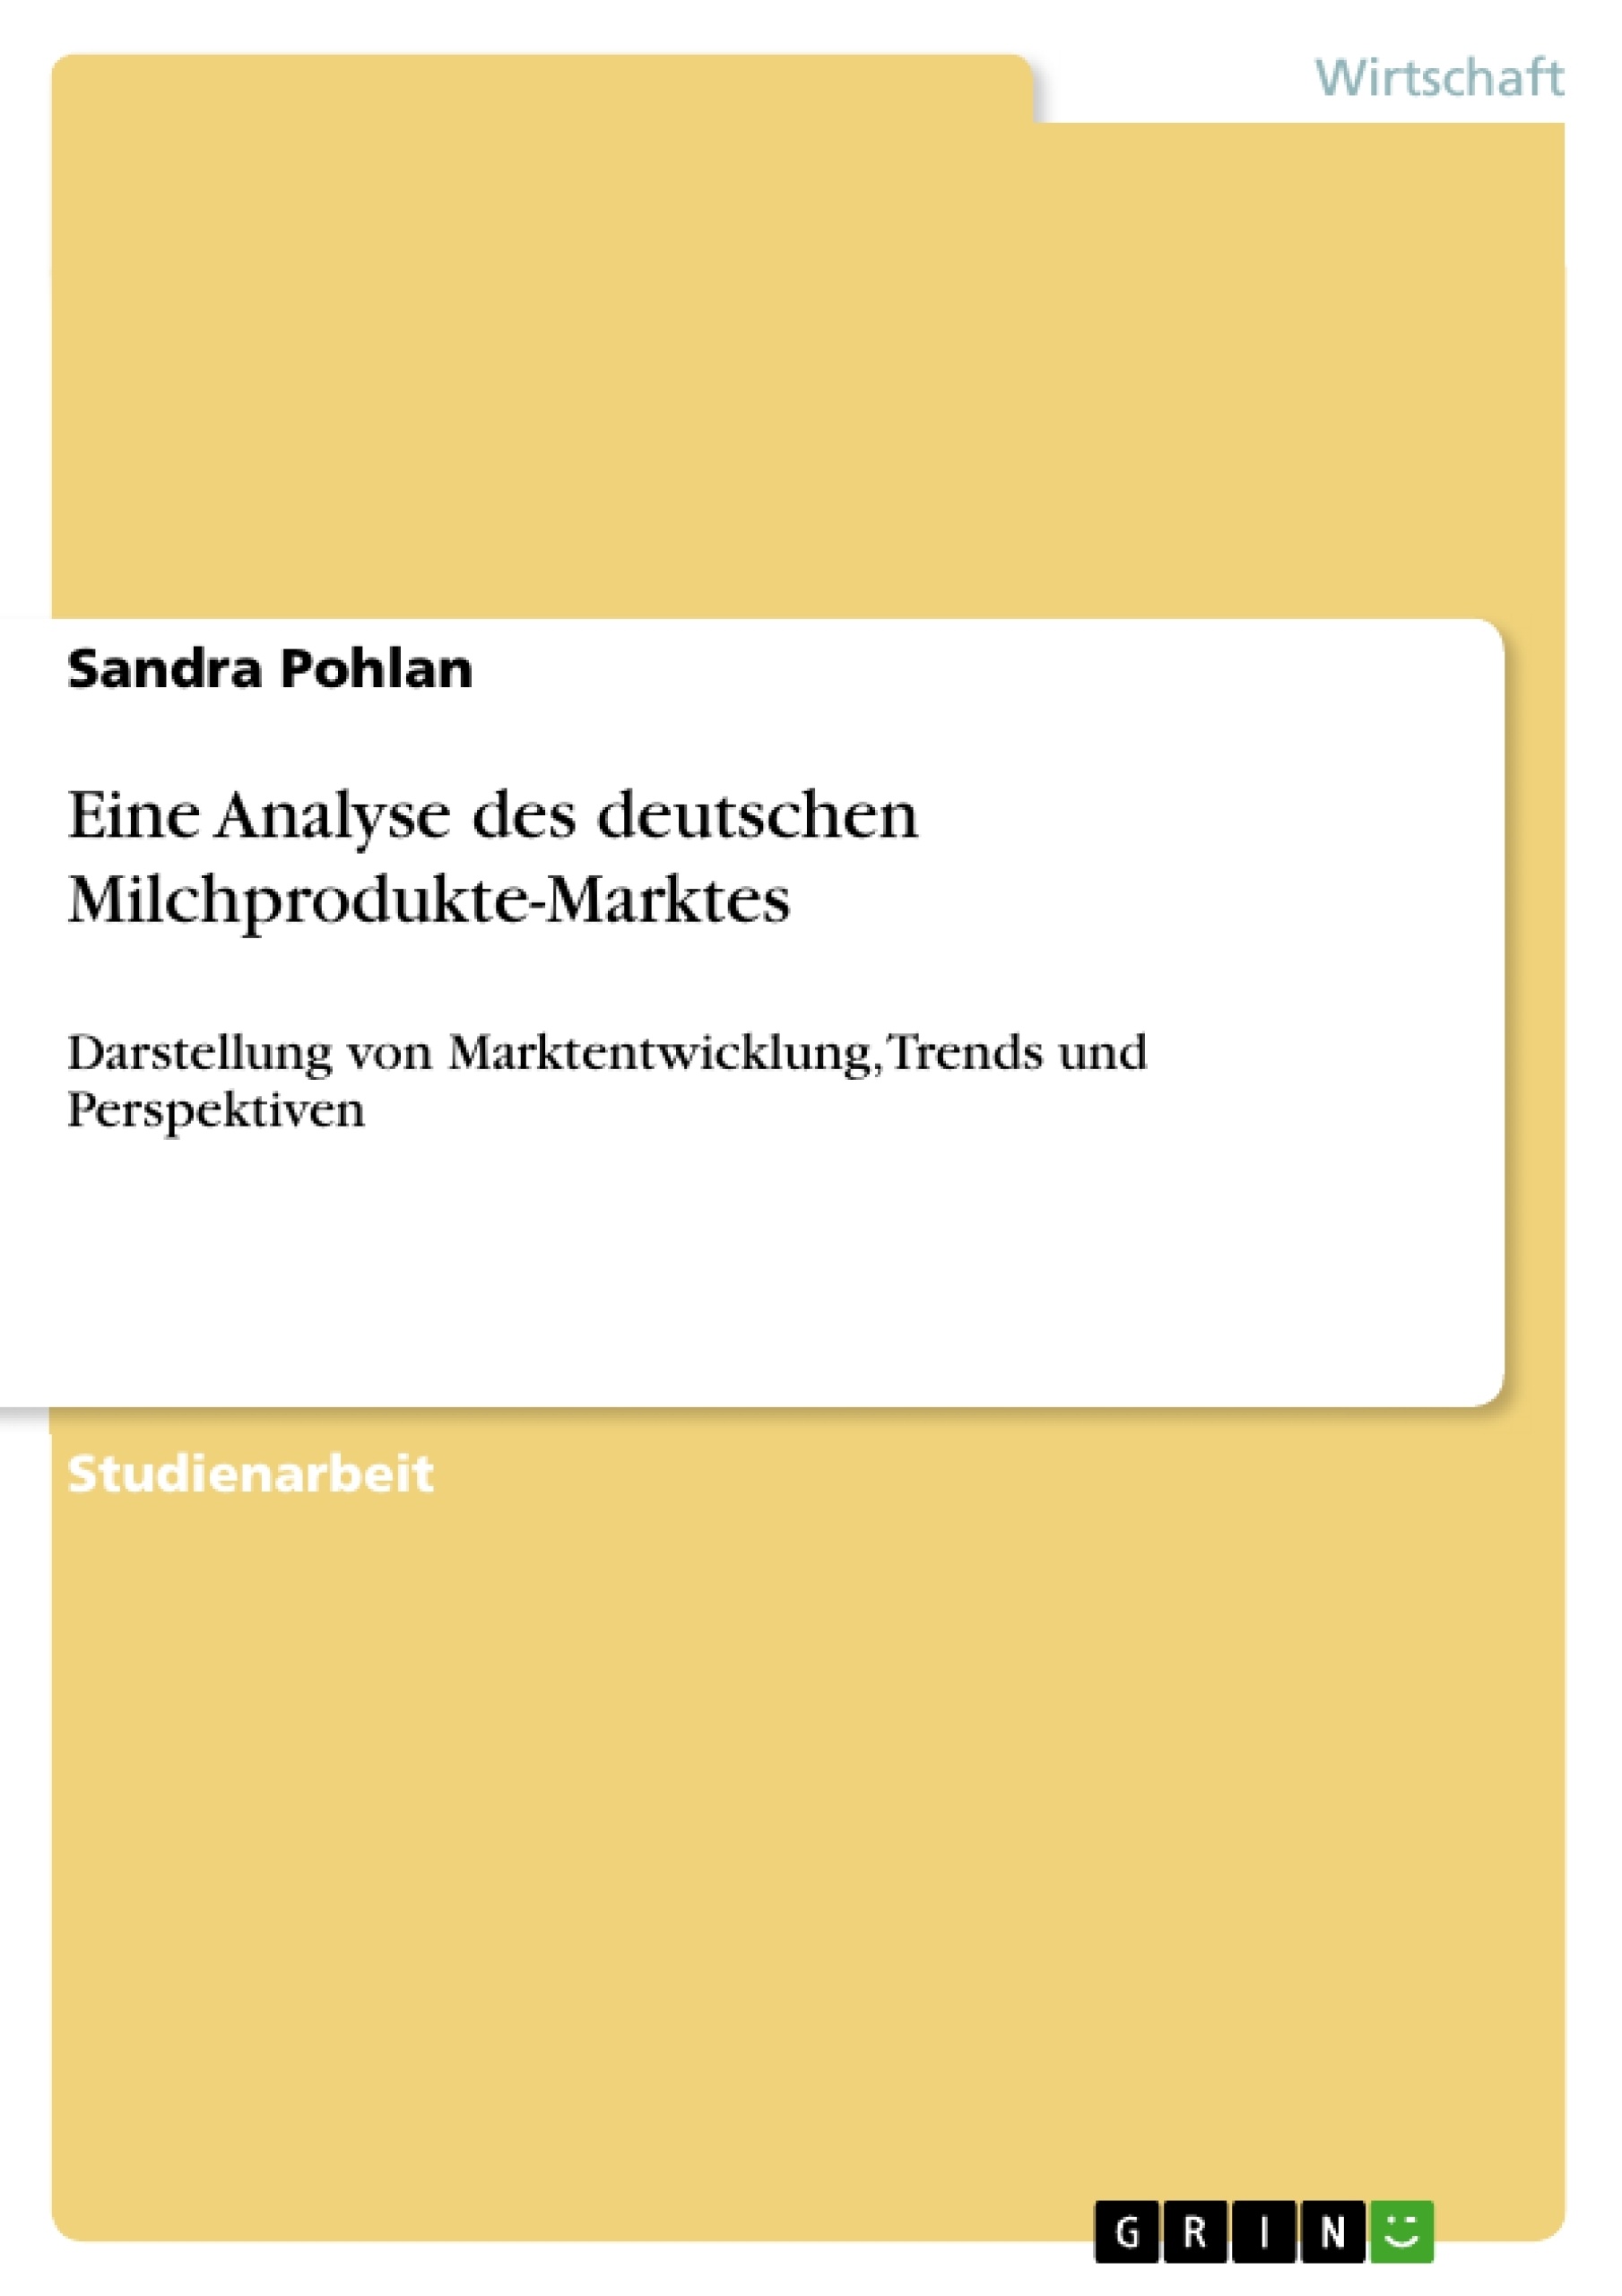 Title: Eine Analyse des deutschen Milchprodukte-Marktes